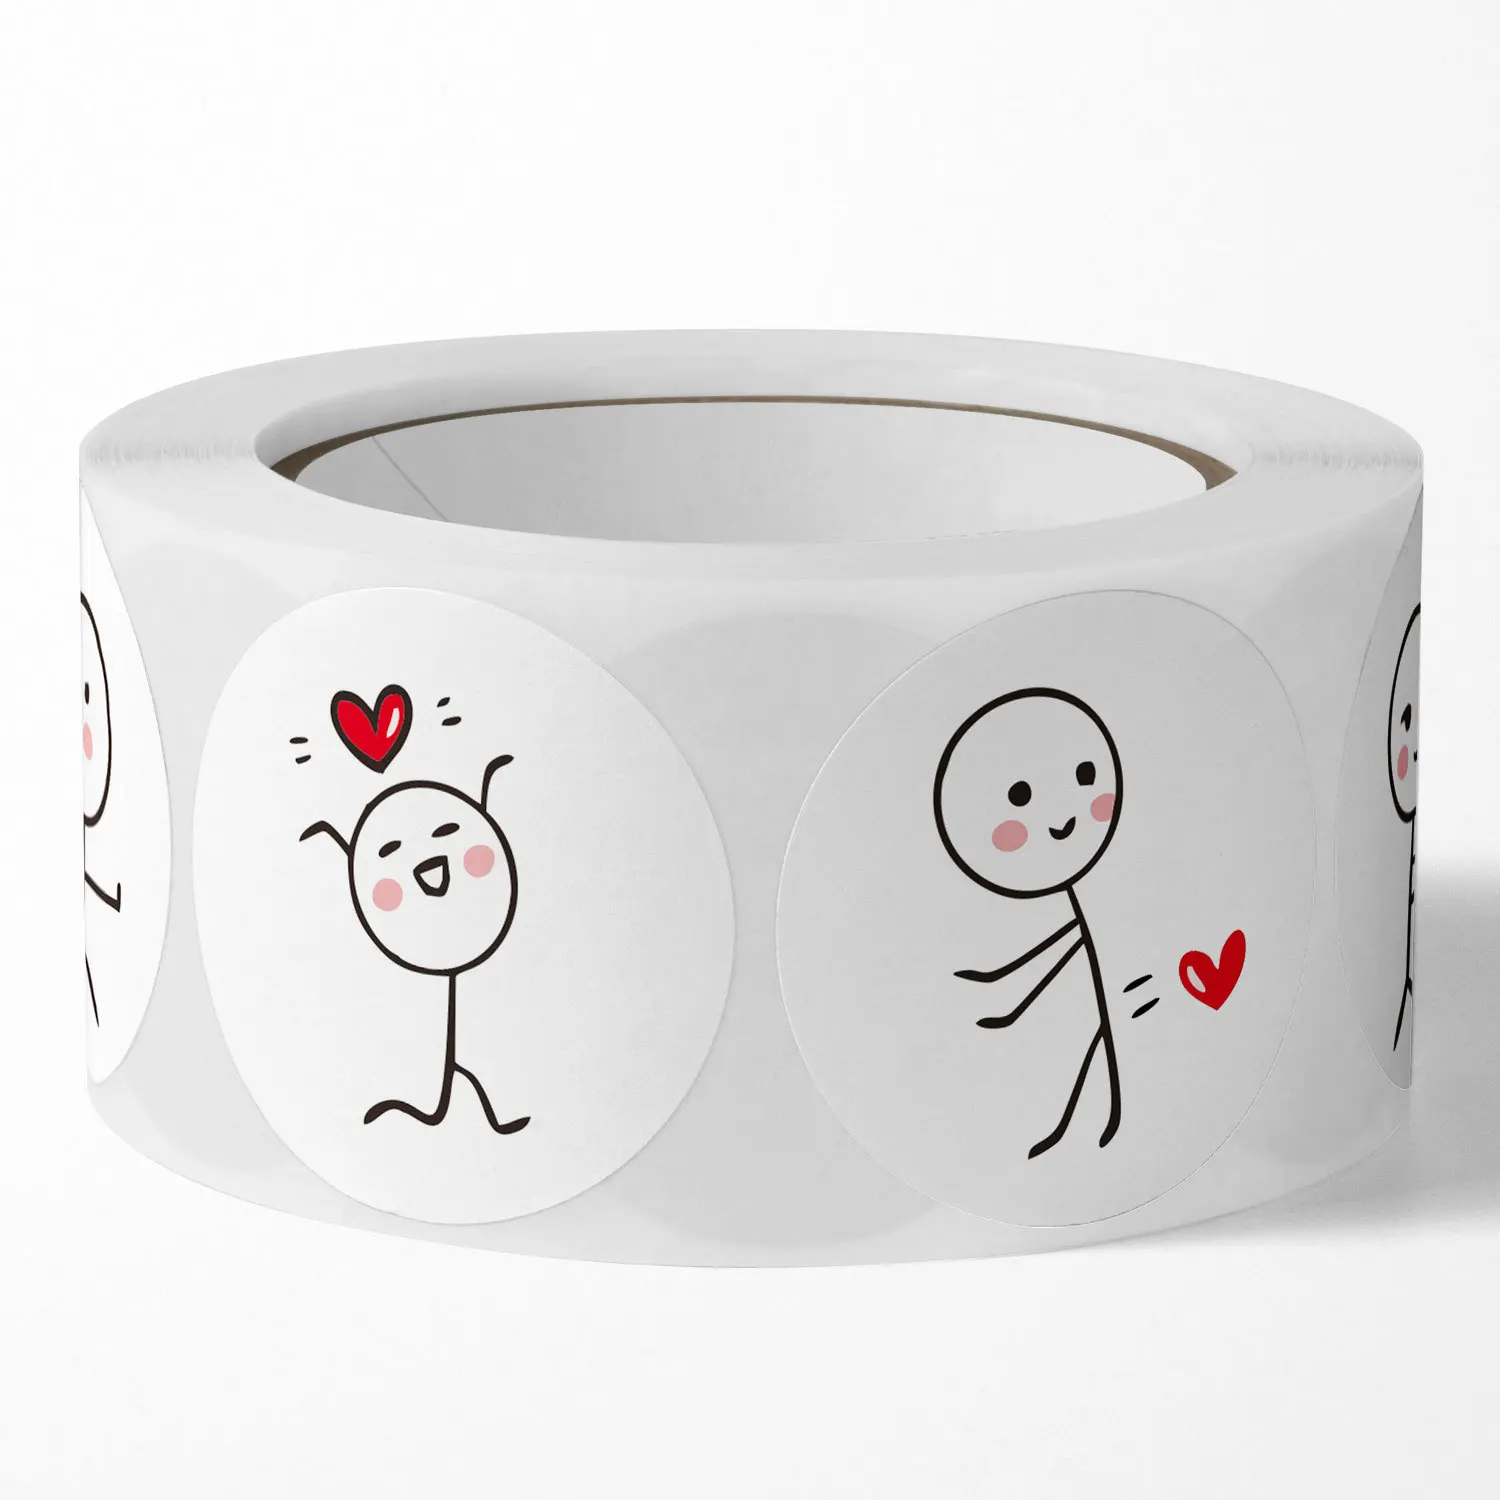 100-500 pezzi adesivi etichette d'amore per matrimonio san valentino decorazione regalo di festa busta adesivi sigillanti Scrapbooking